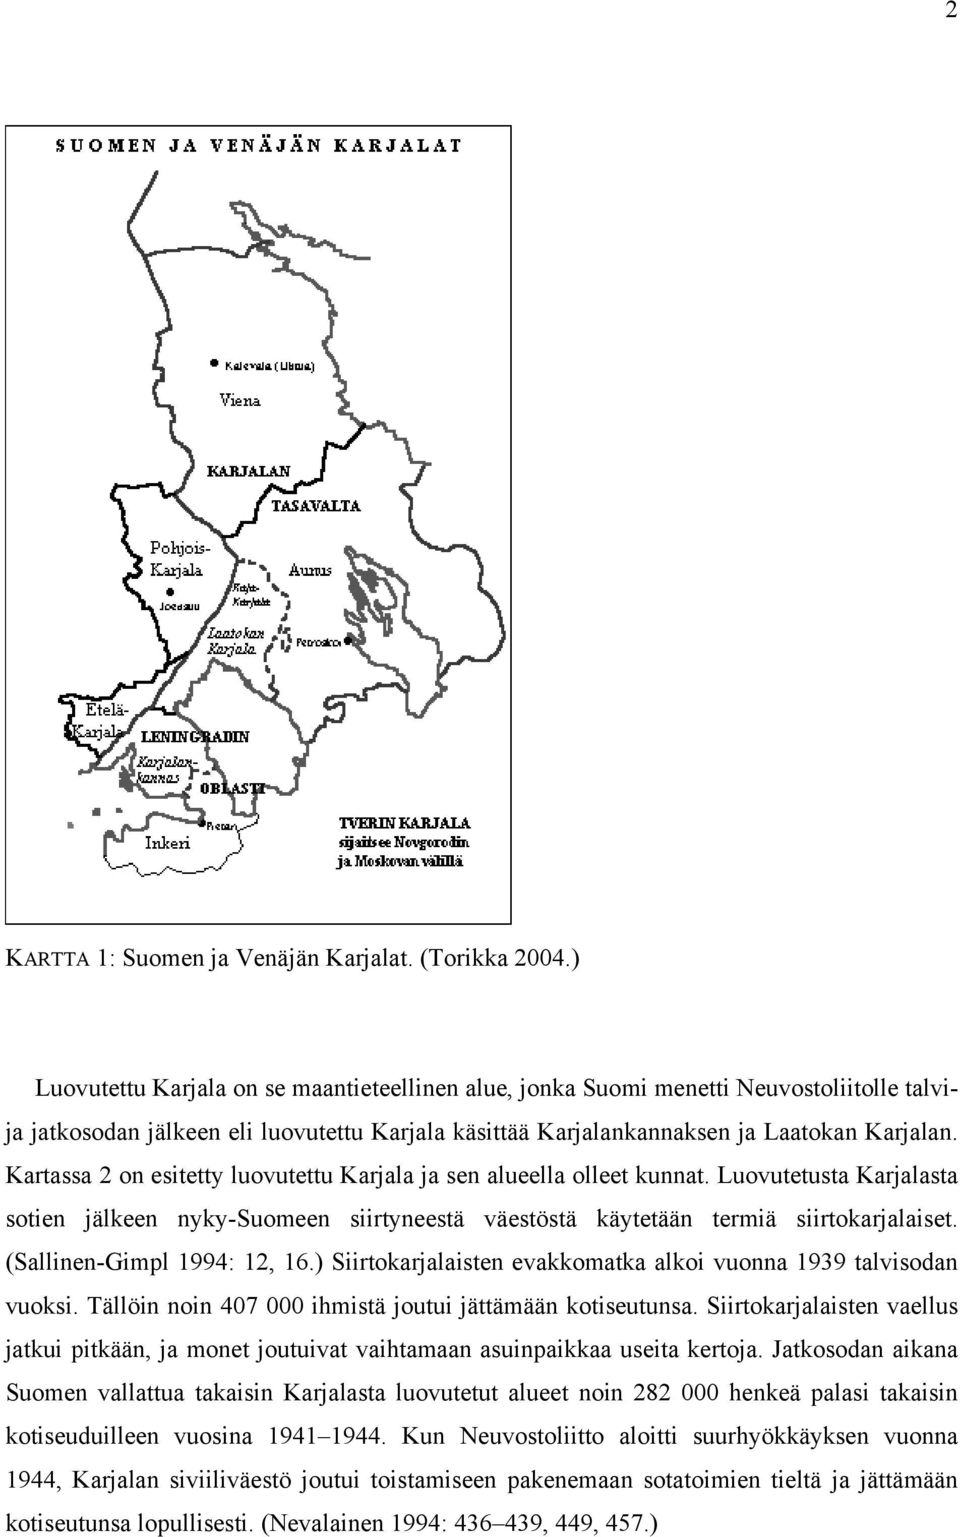 Kartassa 2 on esitetty luovutettu Karjala ja sen alueella olleet kunnat. Luovutetusta Karjalasta sotien jälkeen nyky-suomeen siirtyneestä väestöstä käytetään termiä siirtokarjalaiset.